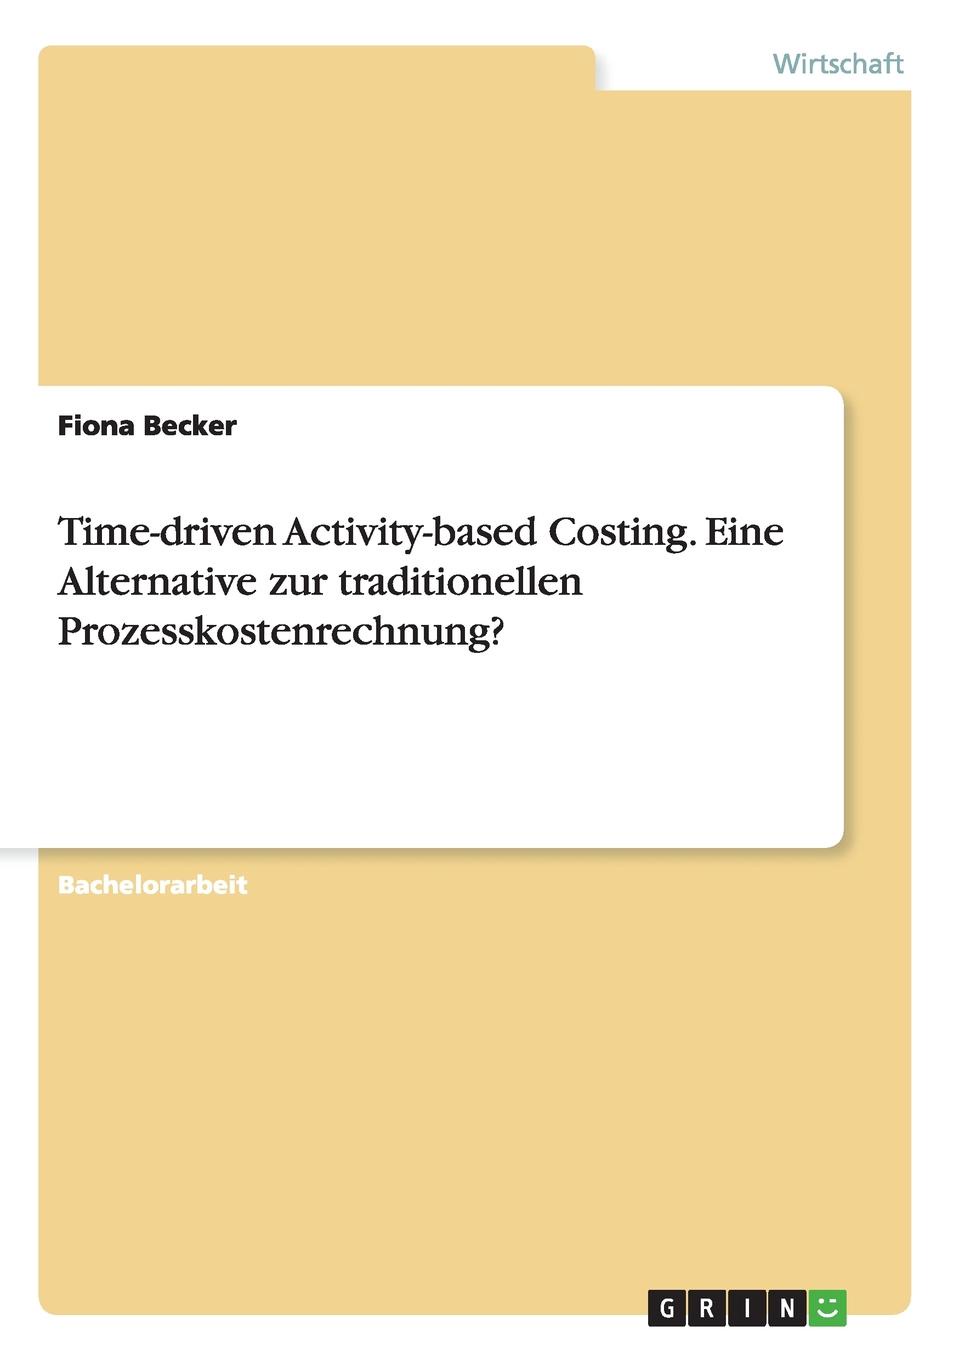 Time-driven Activity-based Costing. Eine Alternative zur traditionellen Prozesskostenrechnung.